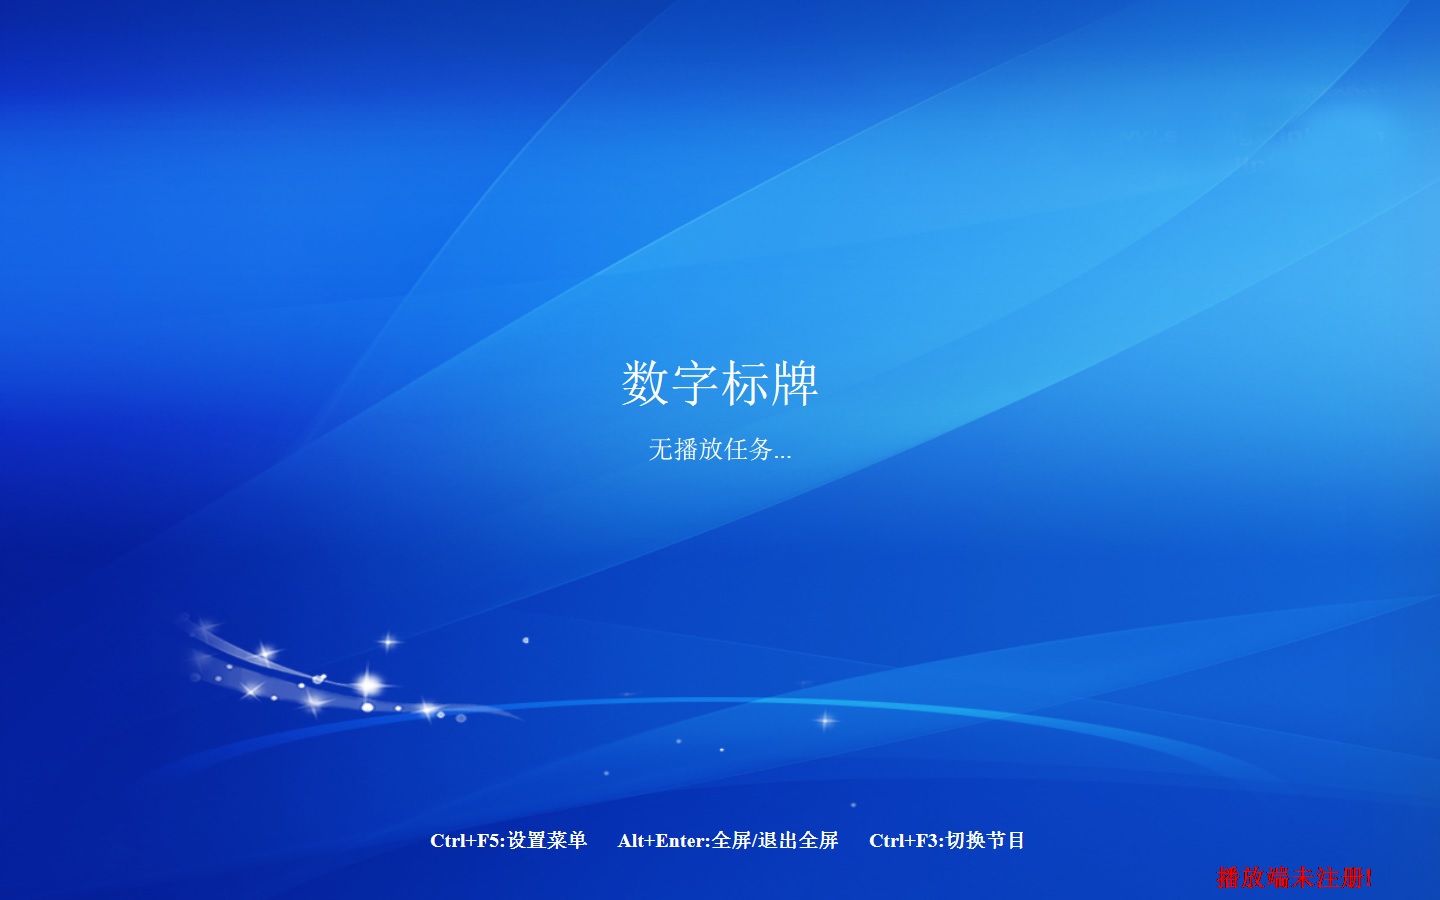 2022年windows版E版播放端4.4.2.1-中文版-X86版播放端软件更新